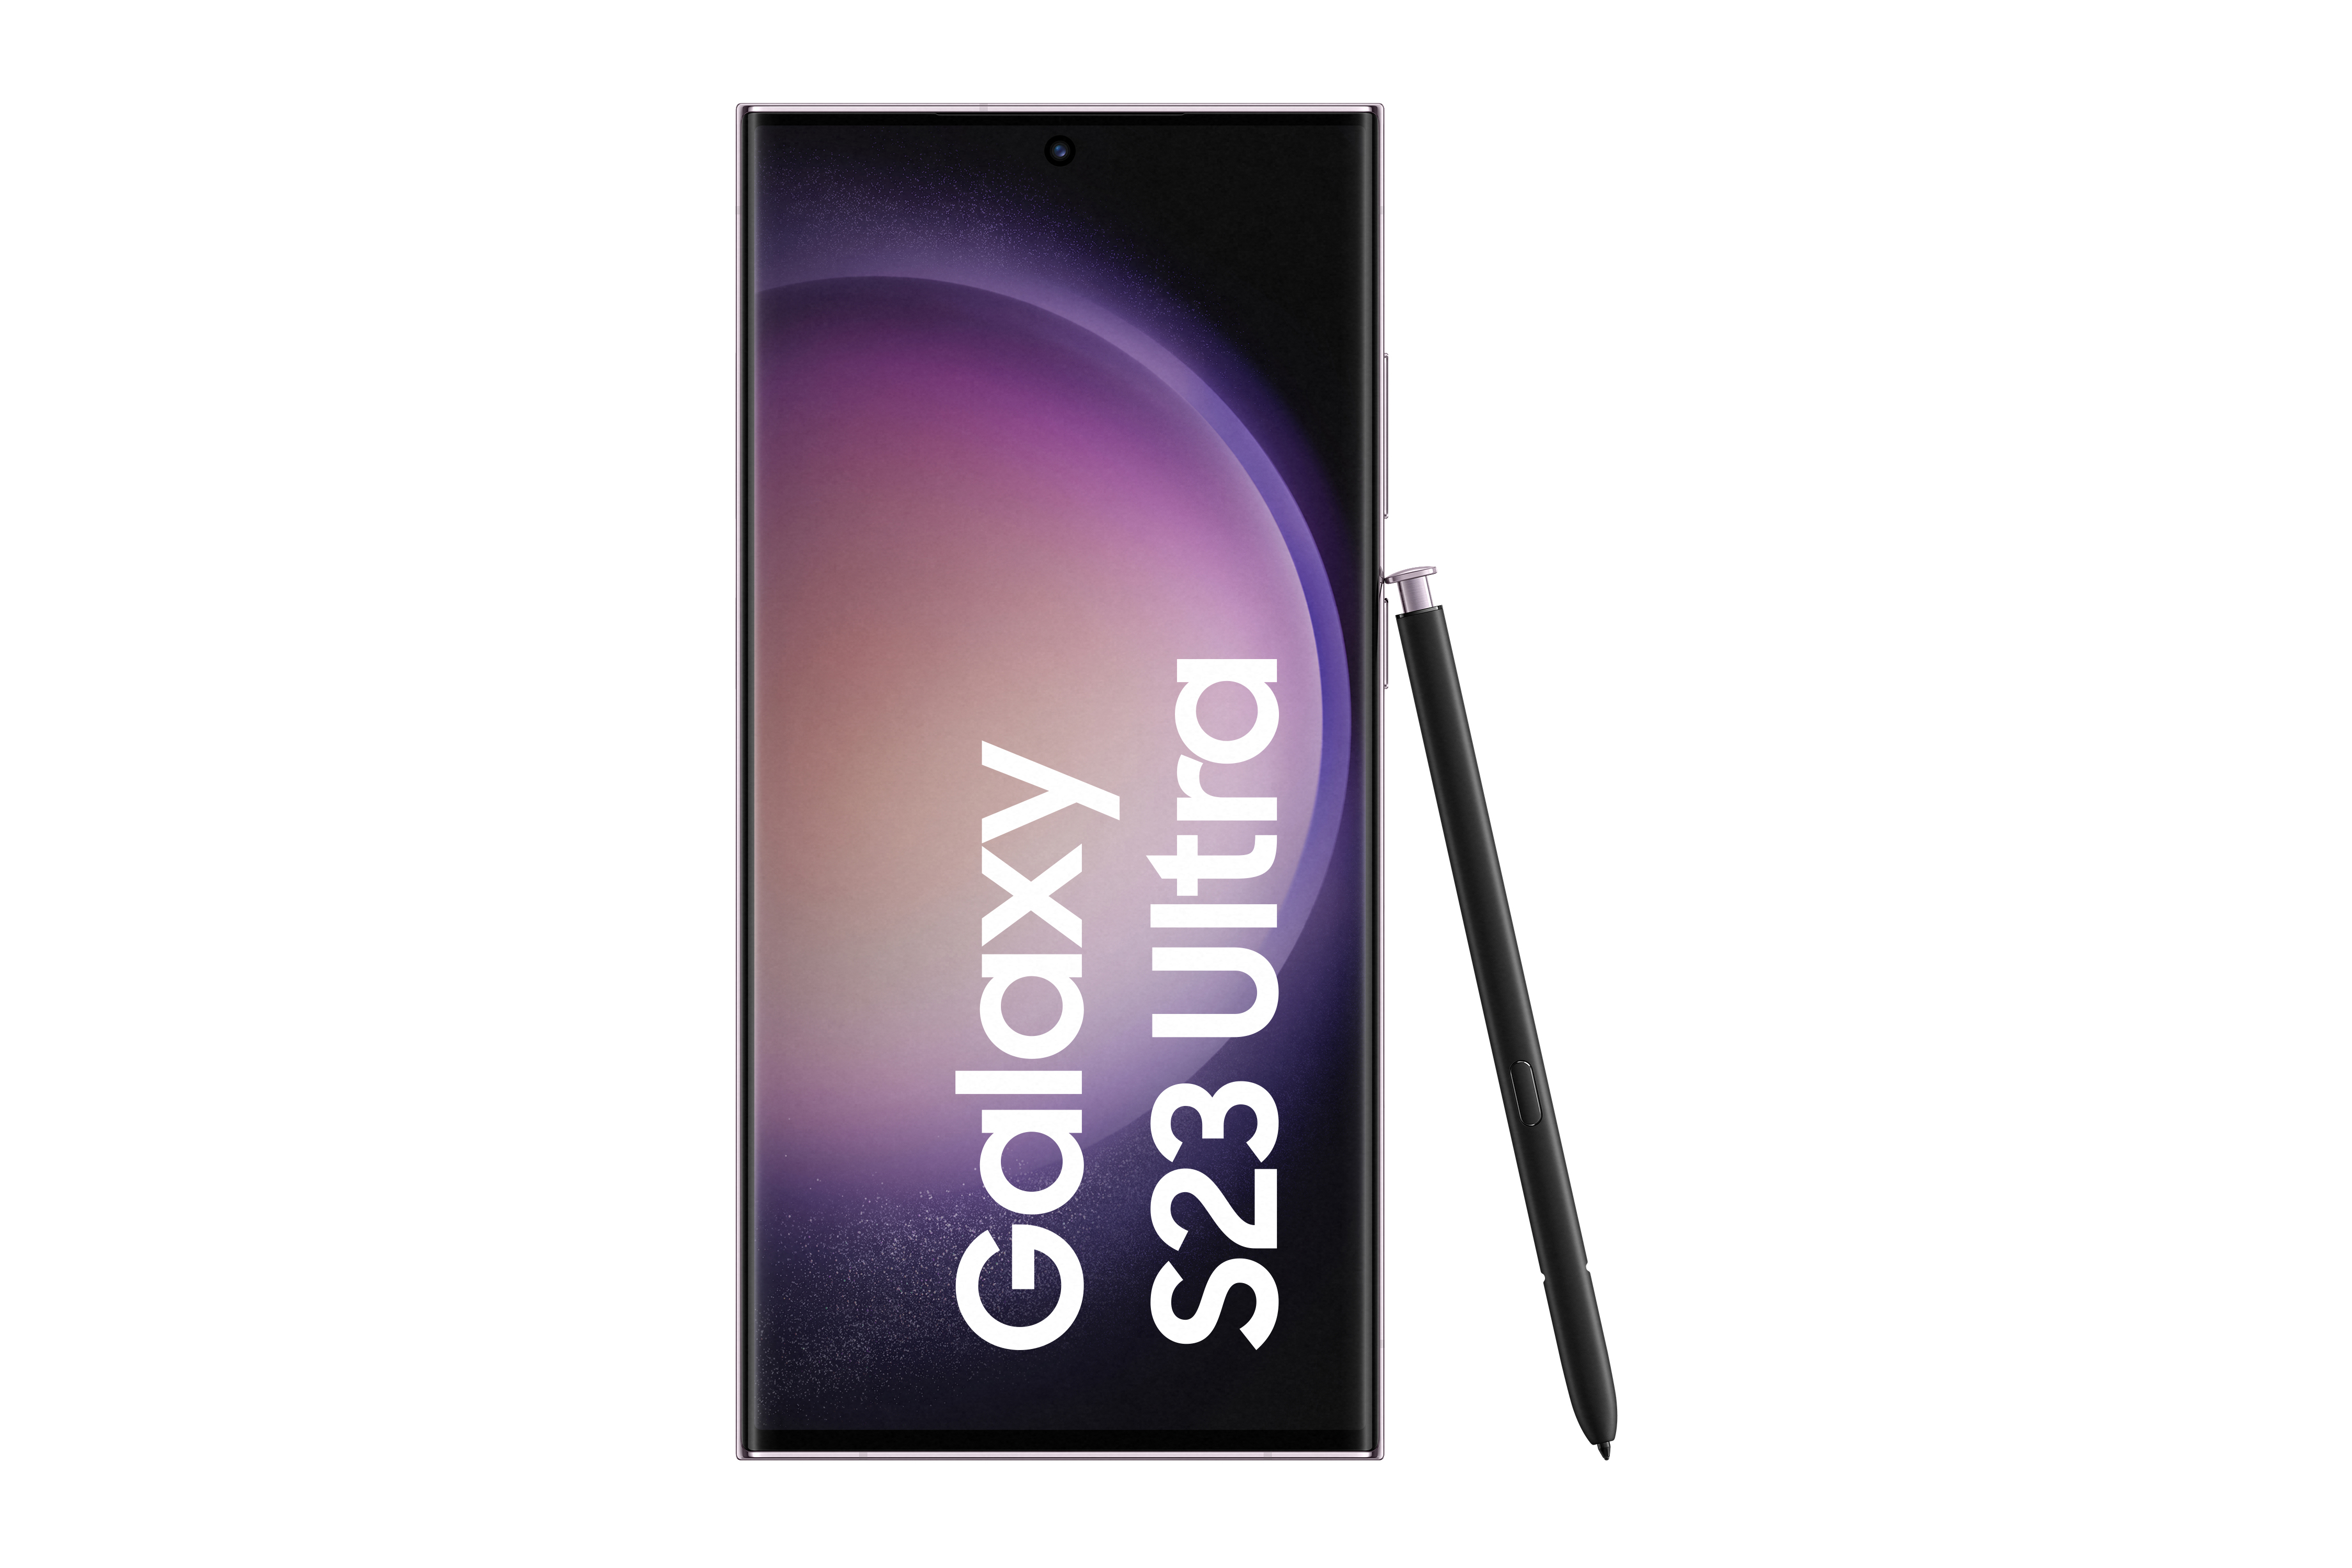 S23 5G SIM GB 256 Ultra Galaxy Dual SAMSUNG Lavender